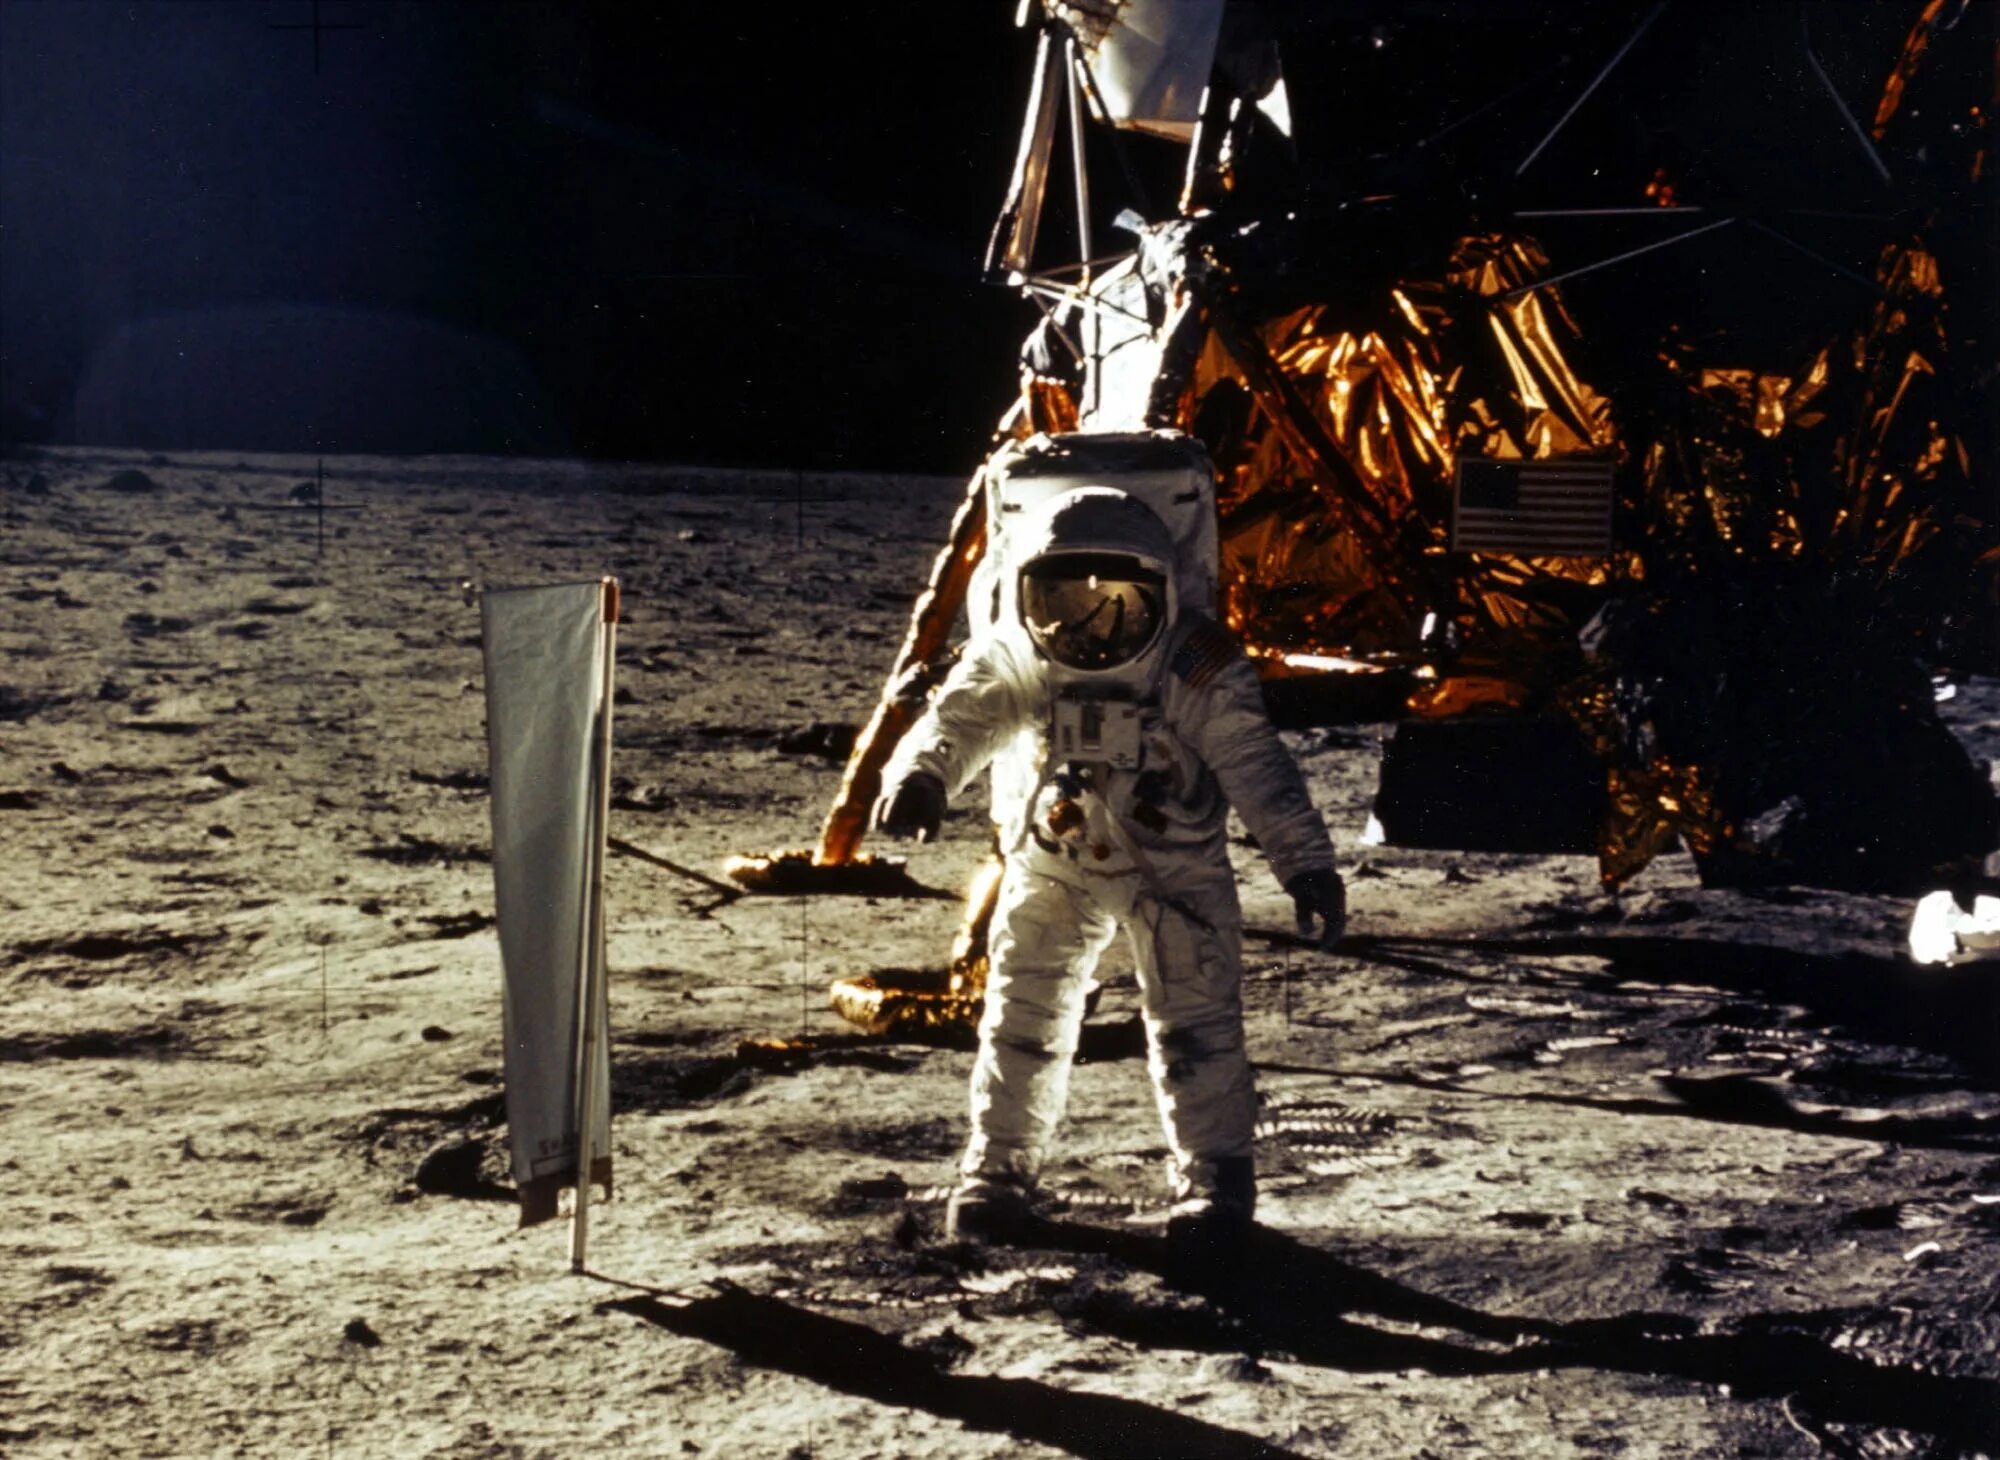 Man lands on the moon. Apollo 11 1969.